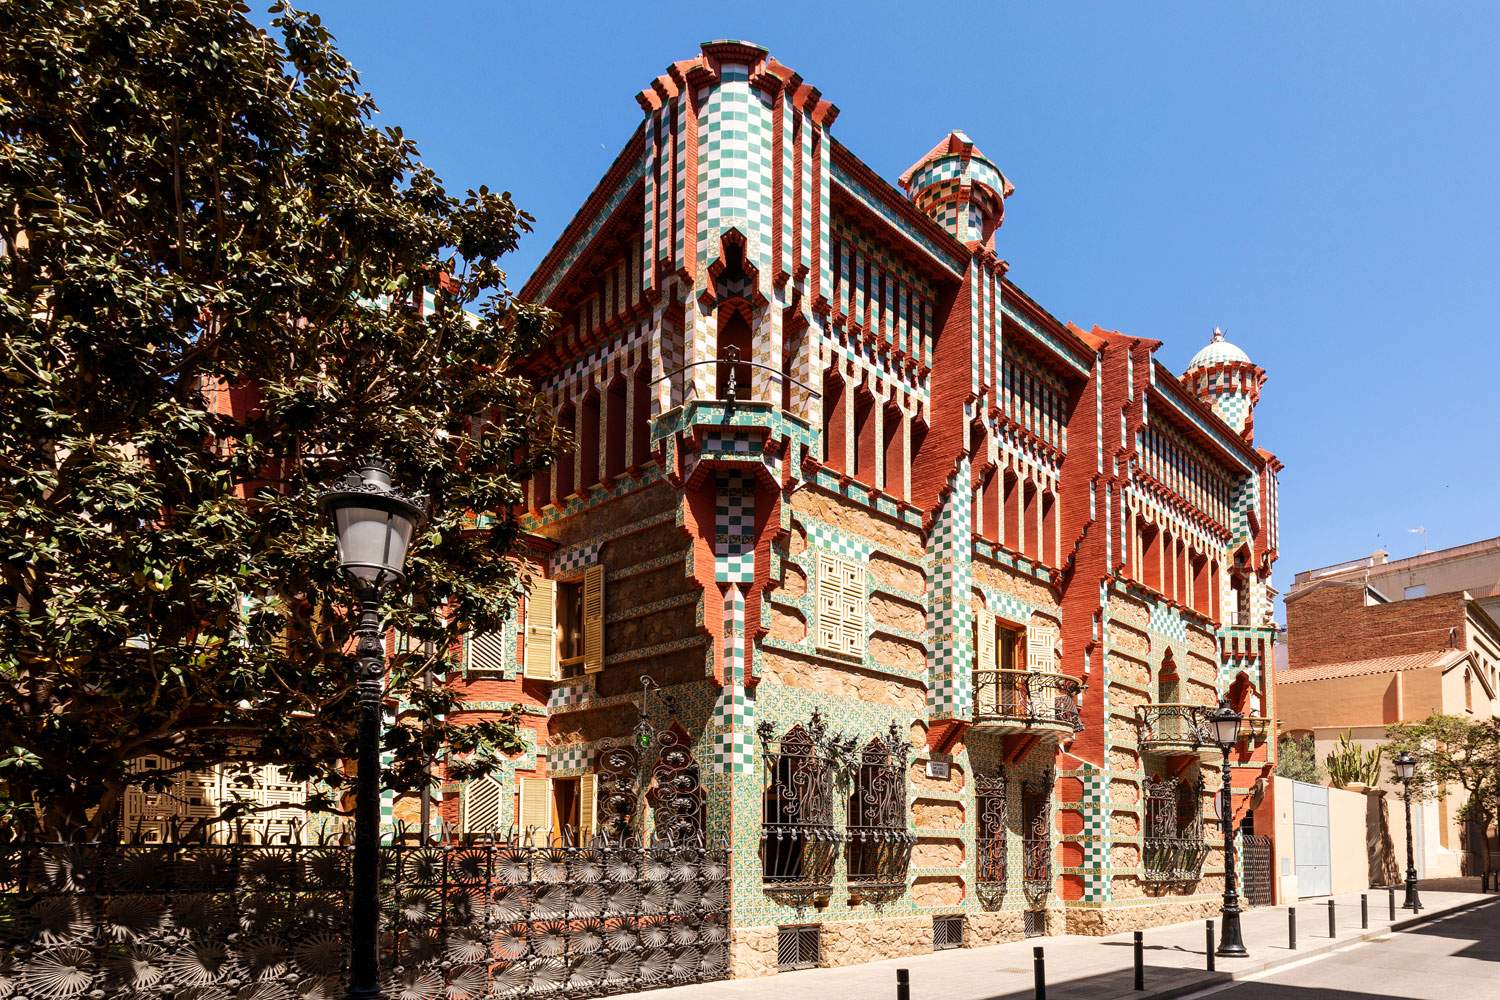 Barcelone, avec Airbnb vous pouvez dormir dans la Casa Vicens d'Antoni Gaudí pour 1 euro.